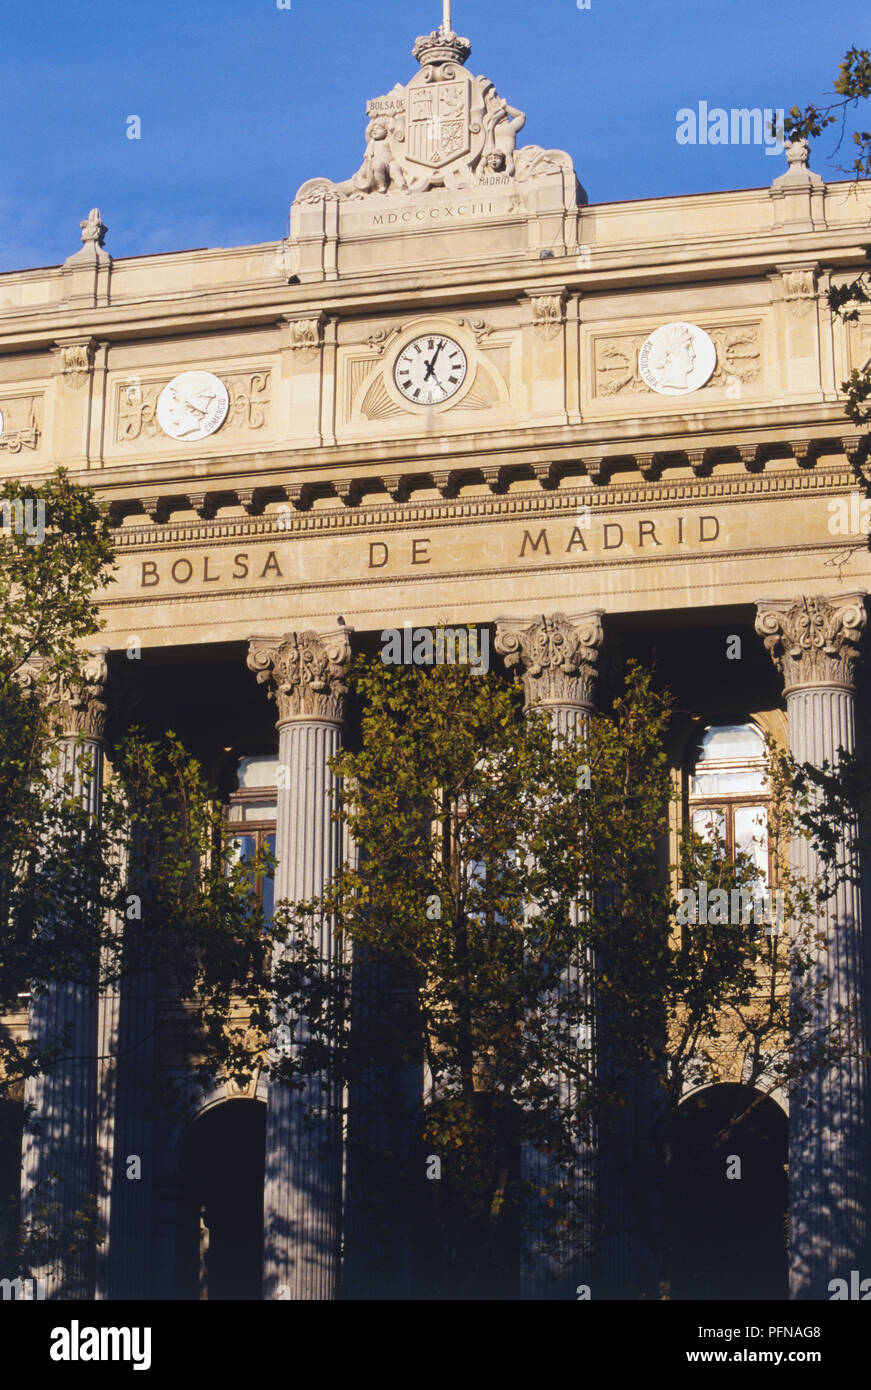 Spanien, Madrid, Bolsa de Comercio, Börse Madrid ist das Haus in diesem attraktiven neoklassischen Gebäude. Stockfoto